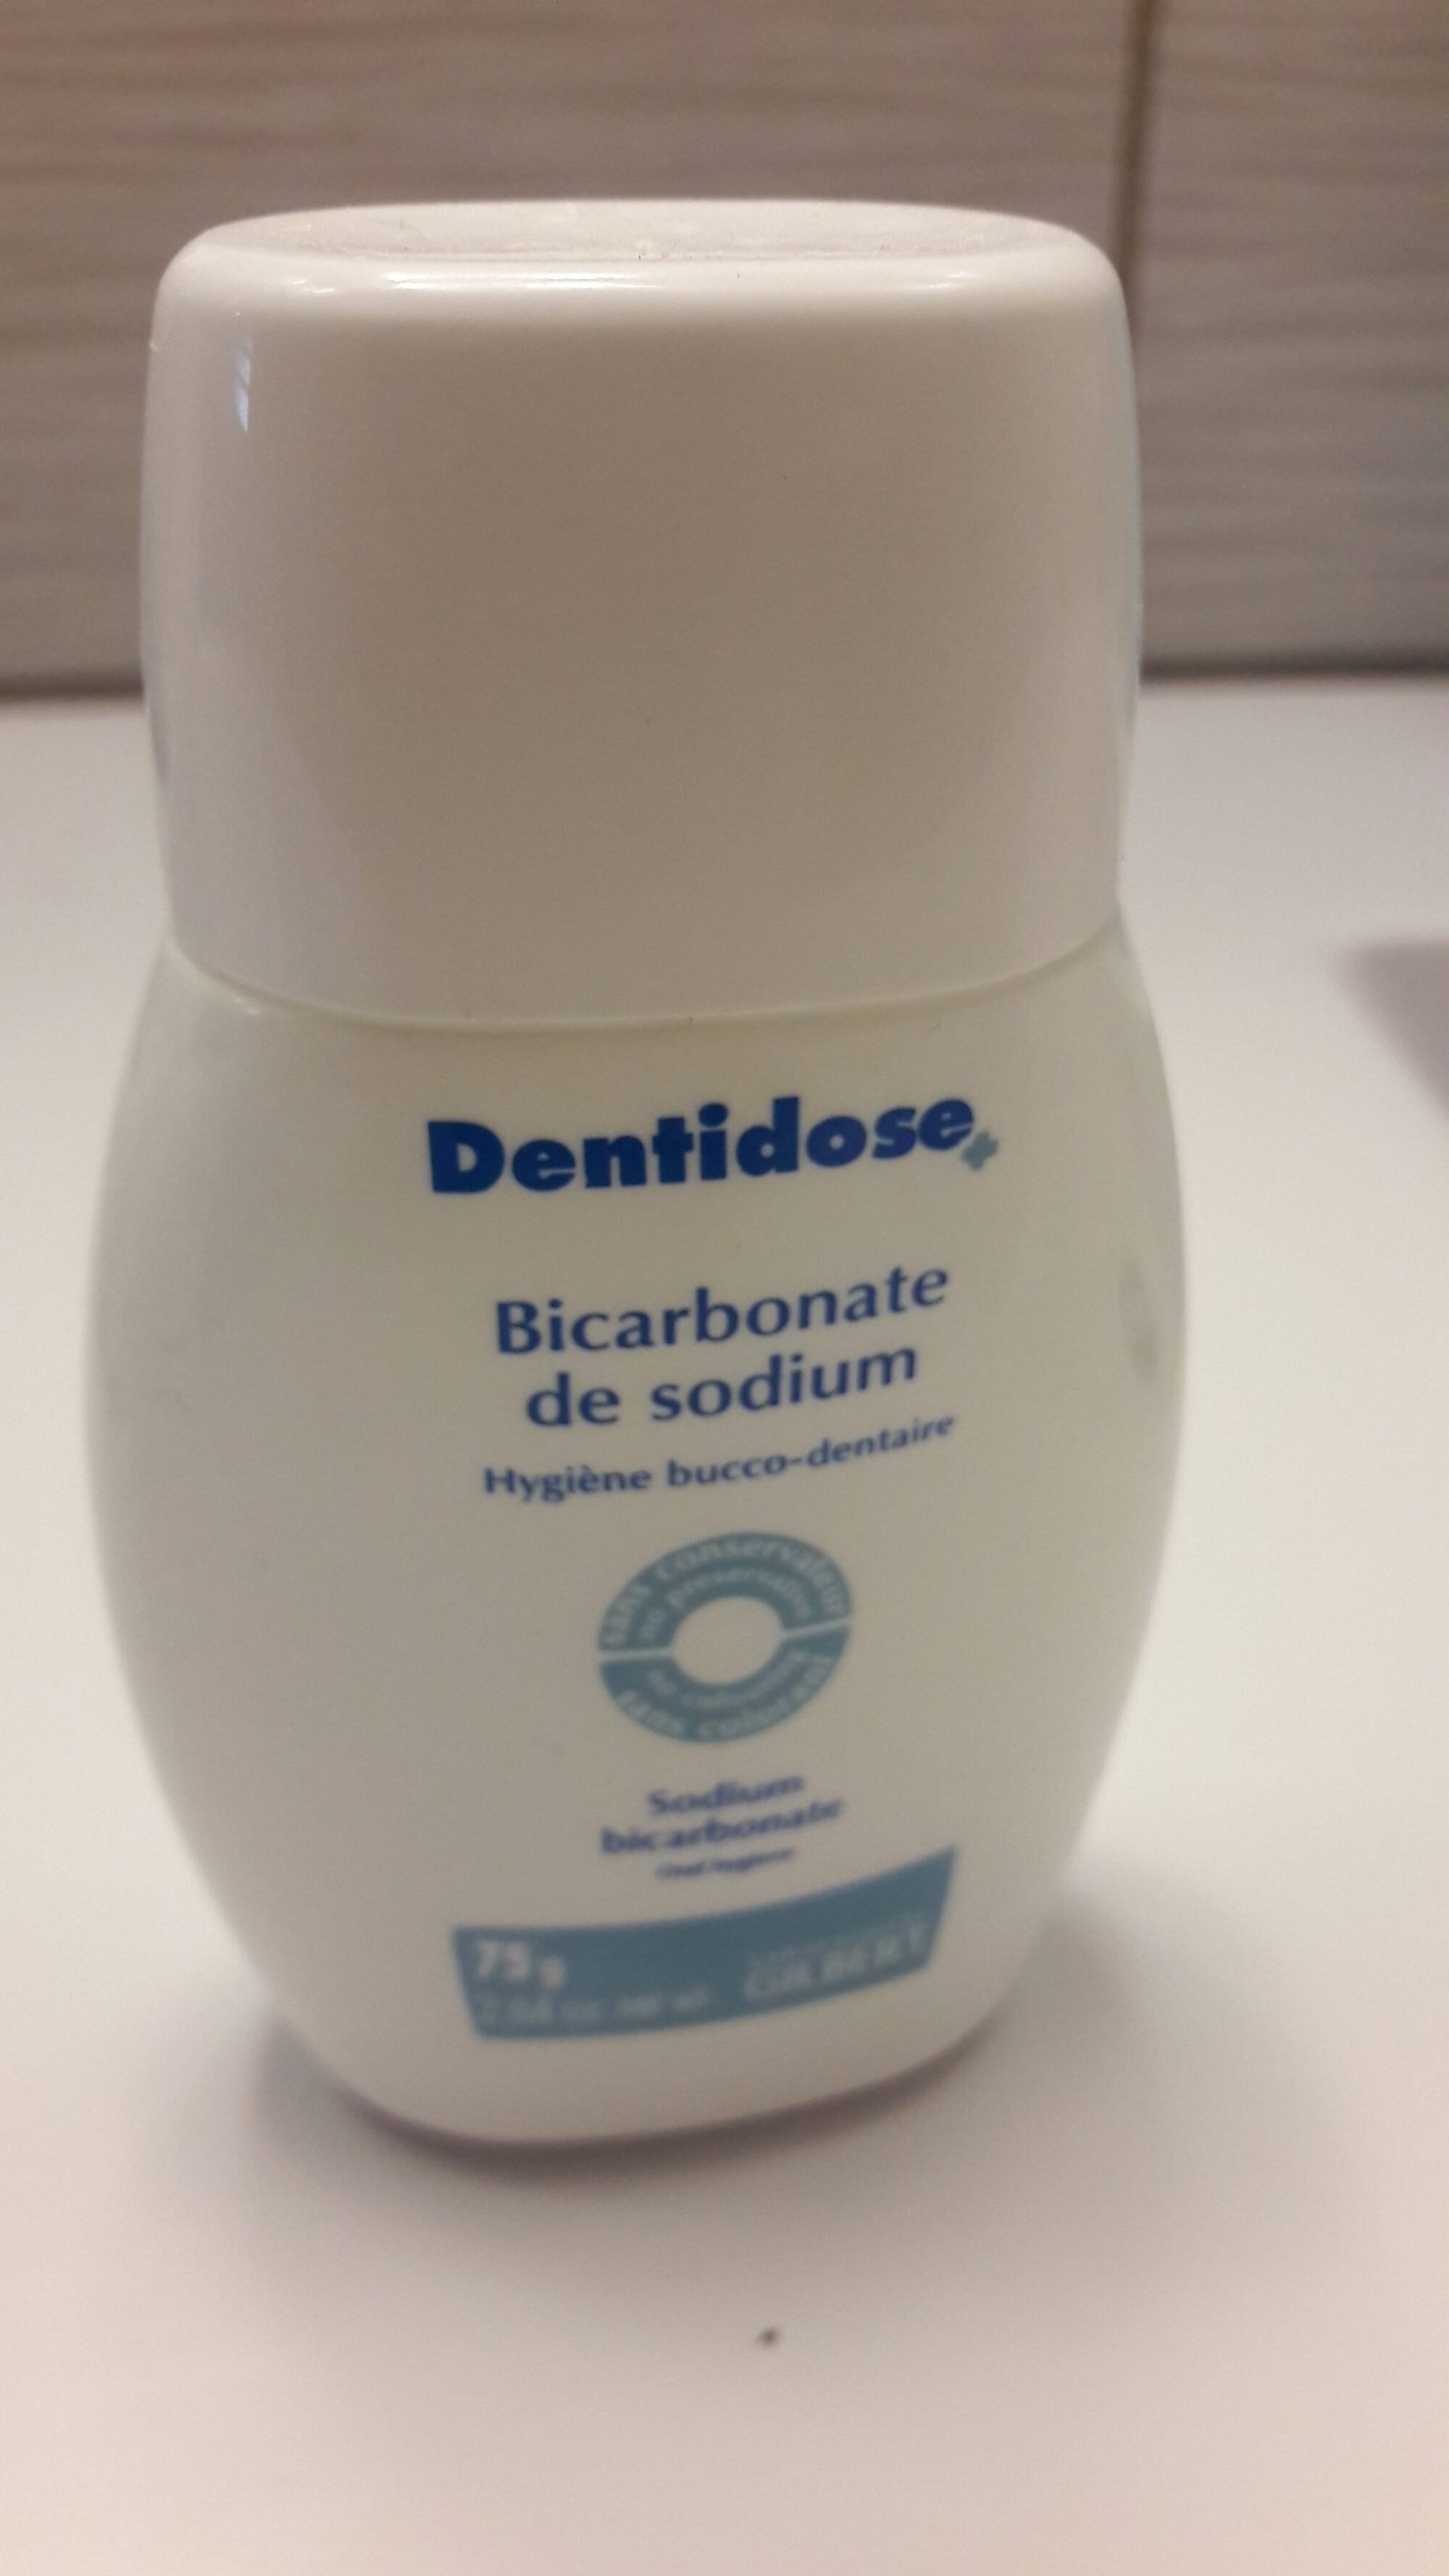 LABORATOIRES GILBERT - Dentidose - Bicarbonate de sodium